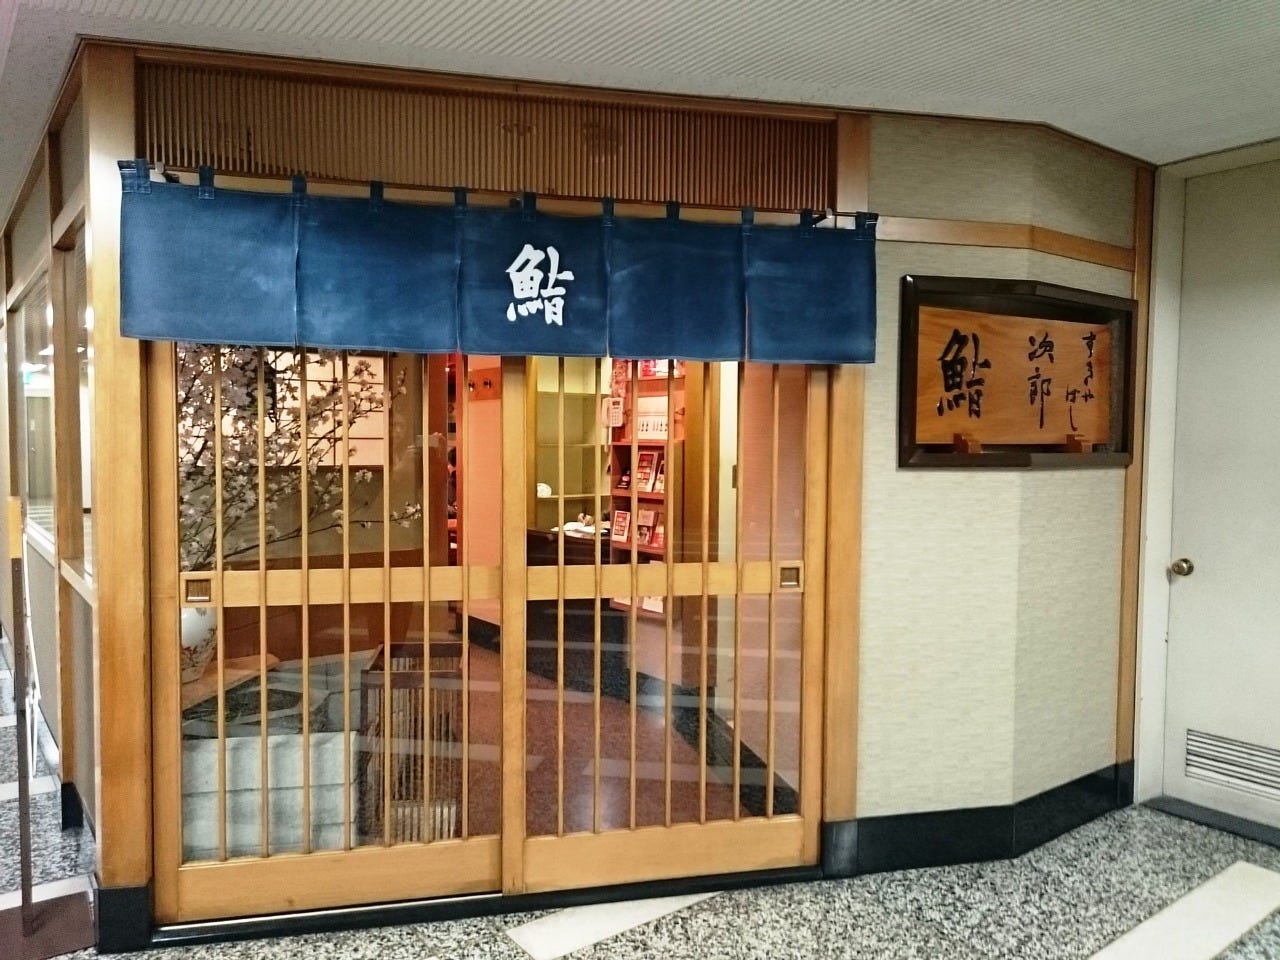 本店 すきや 次郎 ば し 【悲報】日本一美味しい寿司屋「すきやばし次郎」が一般人の予約受付終了 /